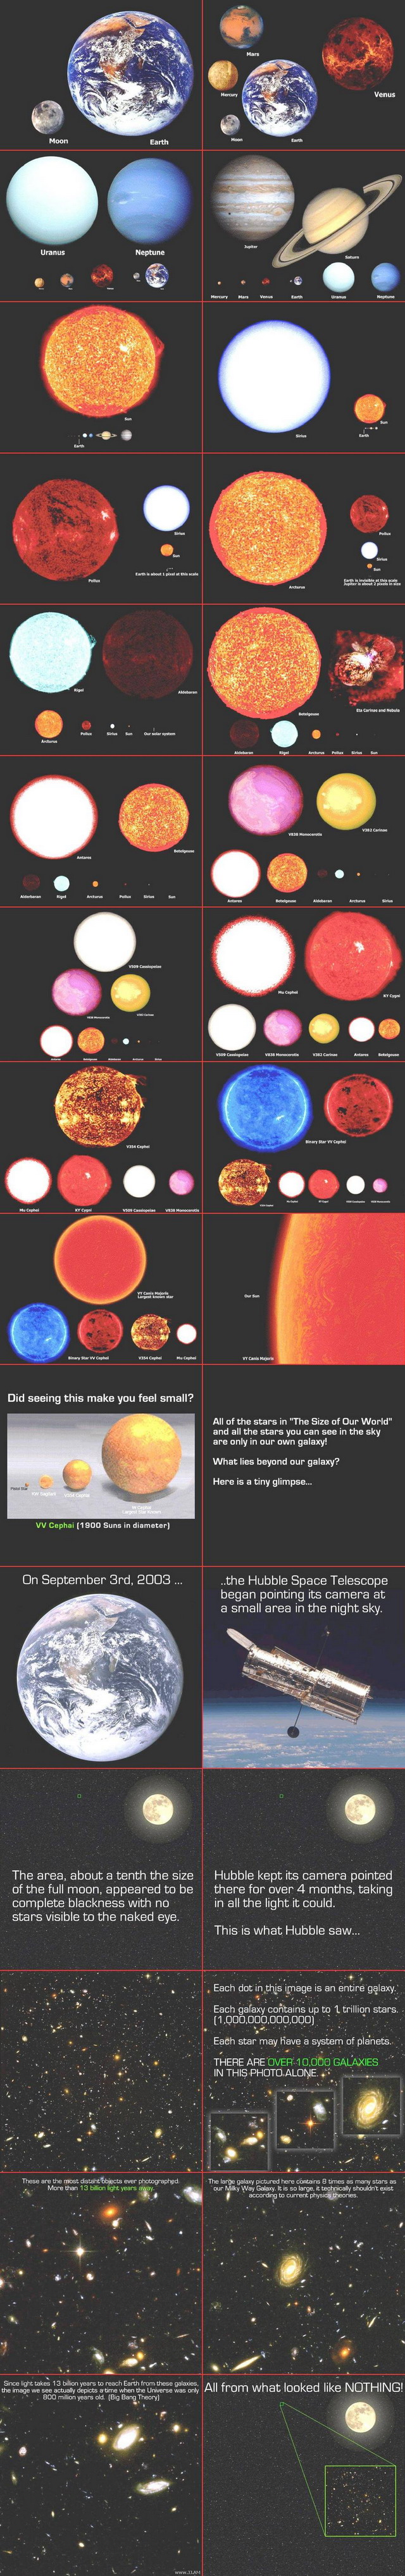 Соотношение размеров планеты Земля и других космических объектов (видео)